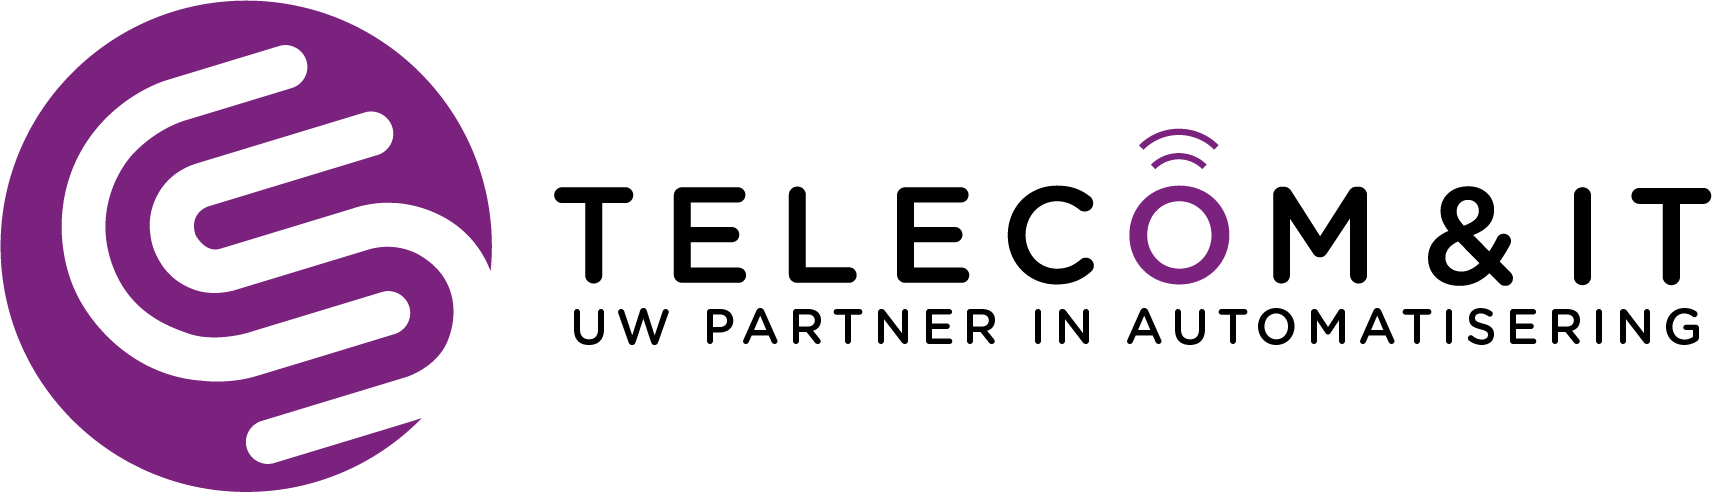 Logo telecom